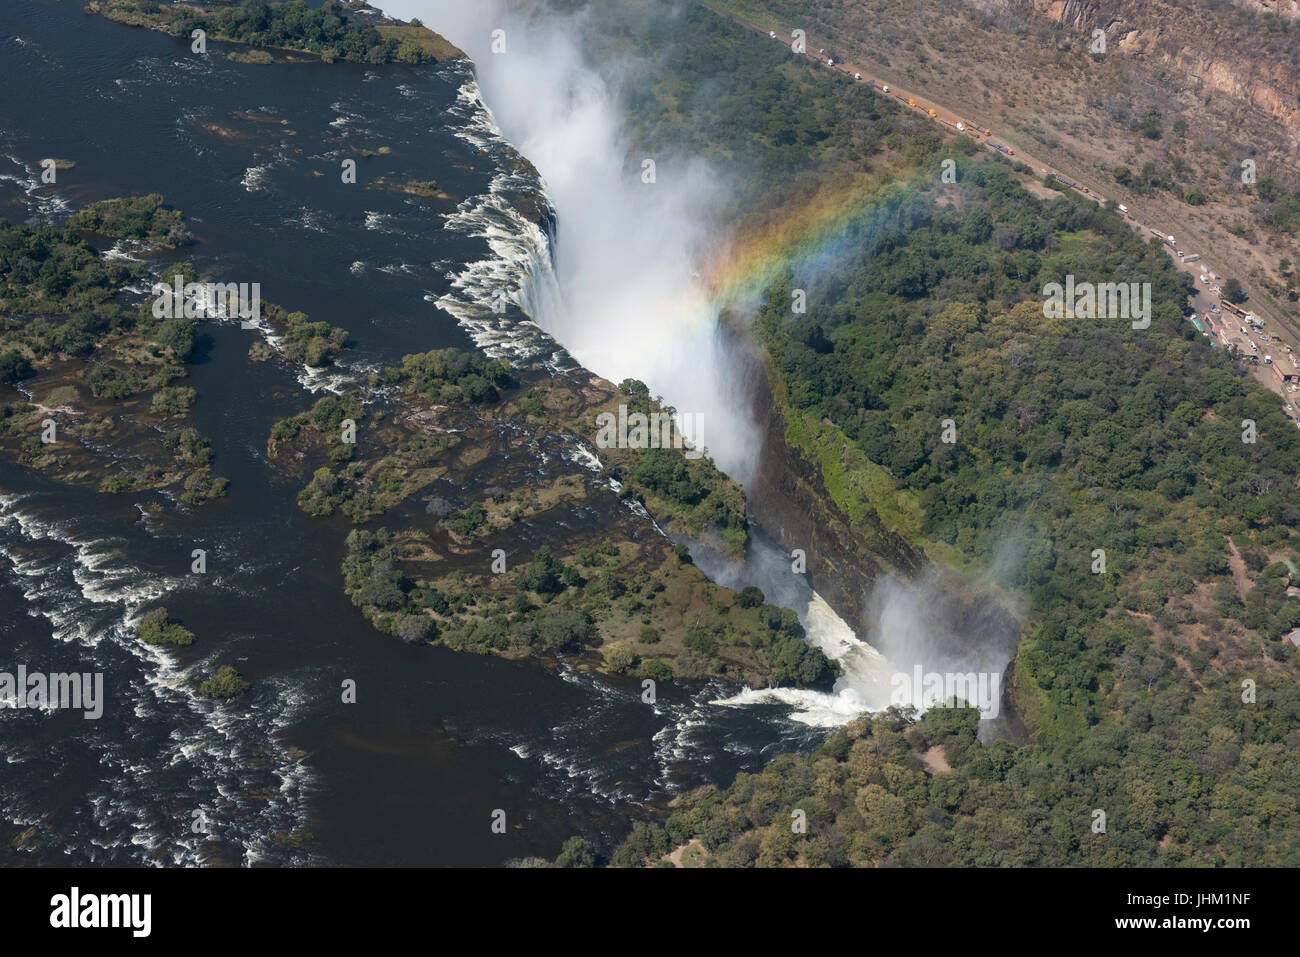 L'Afrique du Sud, à la frontière entre la Zambie et le Zimbabwe. Livingston, Zambie et Victoria Falls au Zimbabwe. Vue aérienne de Victoria Falls, ou Mosi-oa Banque D'Images